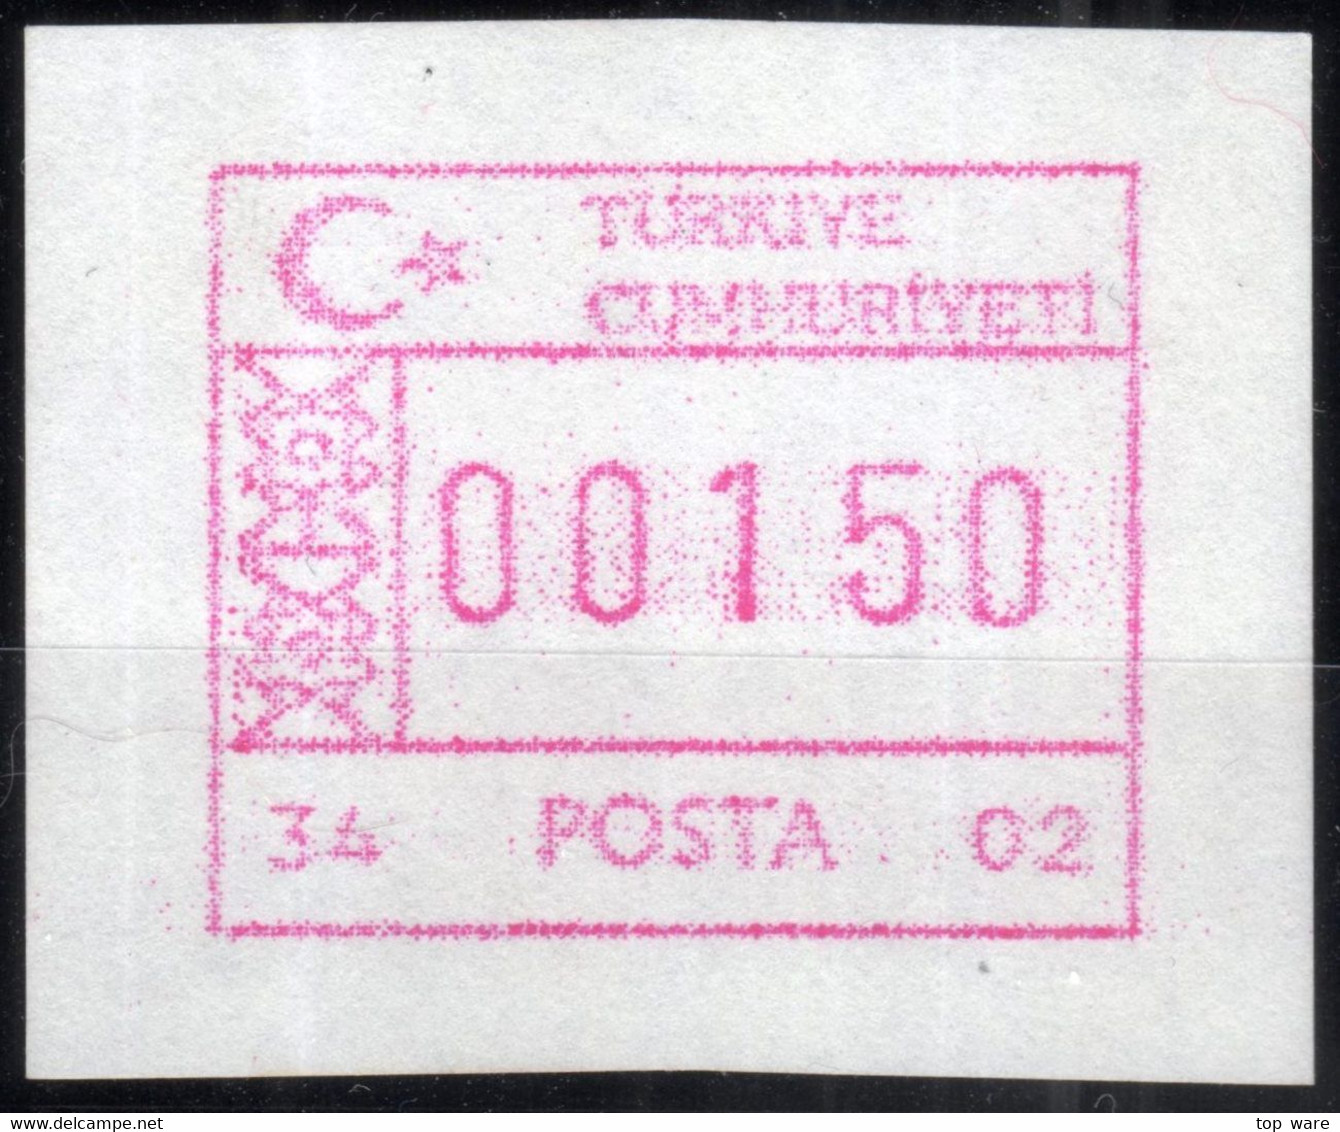 Türkiye Türkei ATM 34-02 / Istanbul Kadiköy Post Office / Weisses Test Papier MNH / Frama Etiquetas Automatenmarken - Automatenmarken